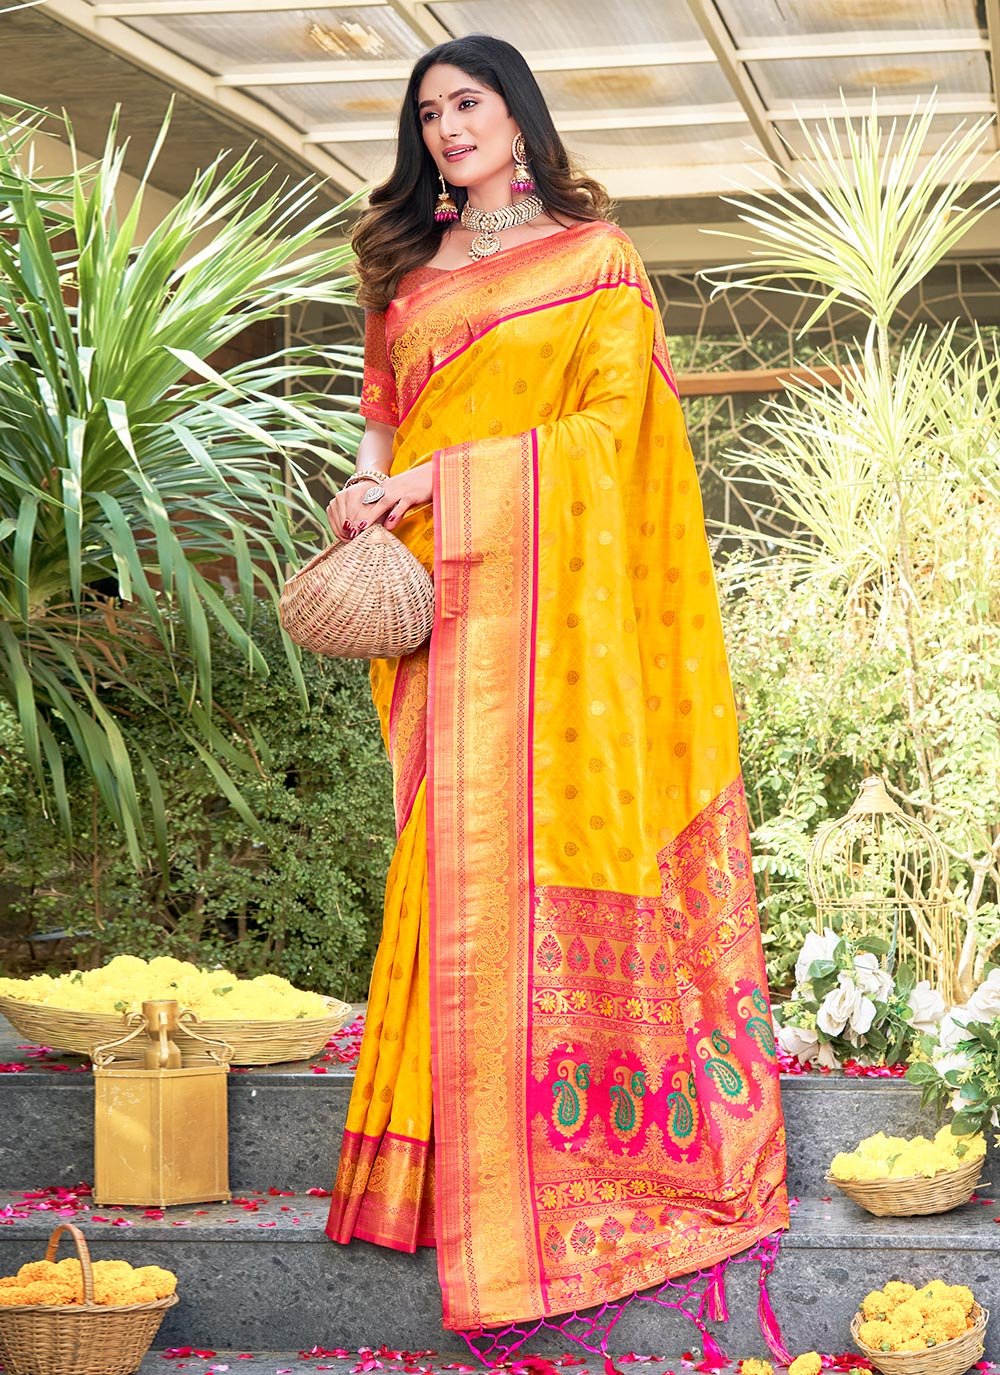 Prajakta Koli looks smoking hot in latest yellow saree, fans love it